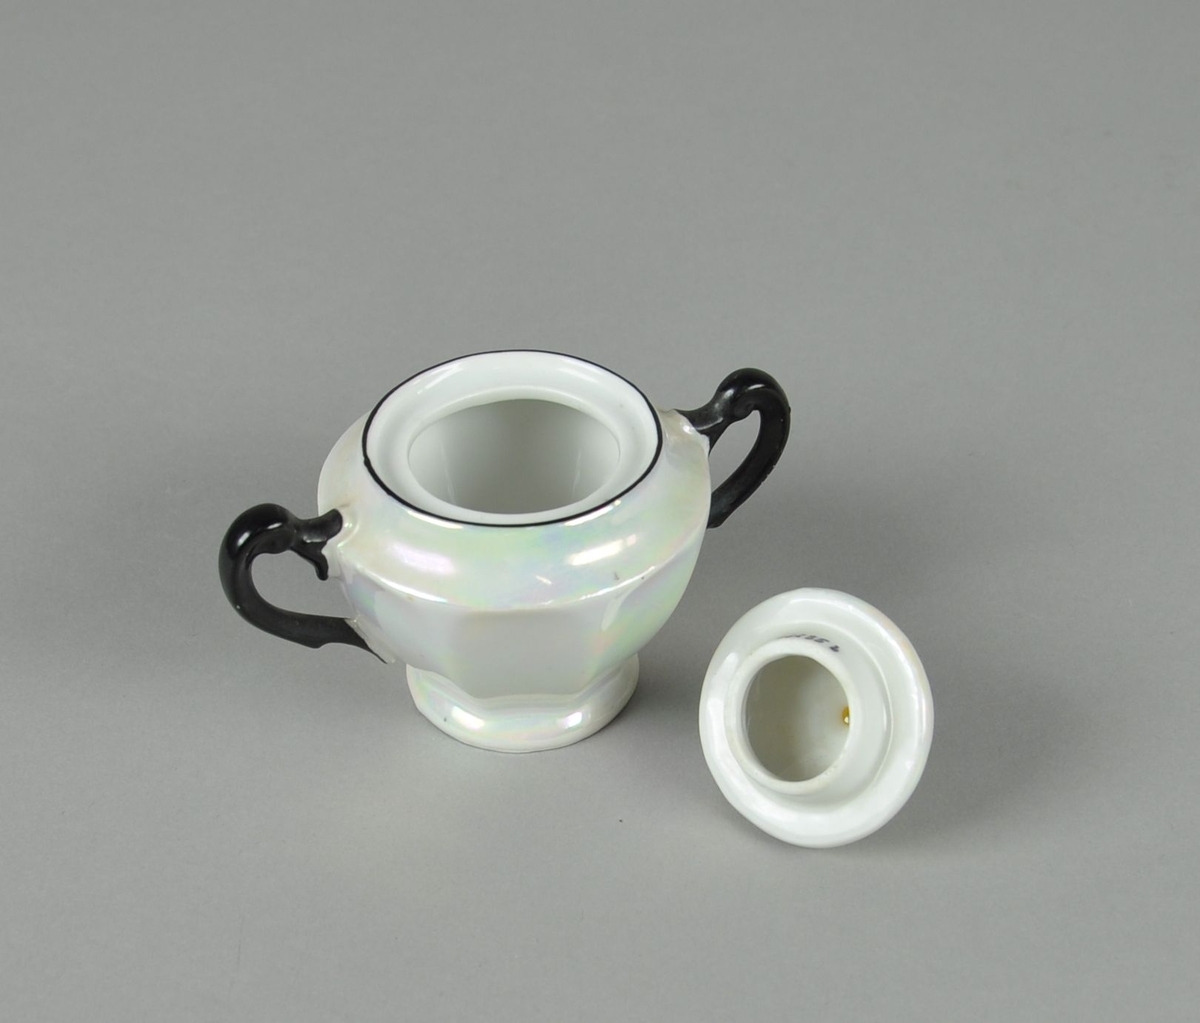 Sukkerkopp av glassert keramikk, med lokk. Koppen har to hanker. Koppen har perlemorsflate, med svartfarget maling på hankene, ved munningsrand og knott på lokket. Koppen har fassetert profil.